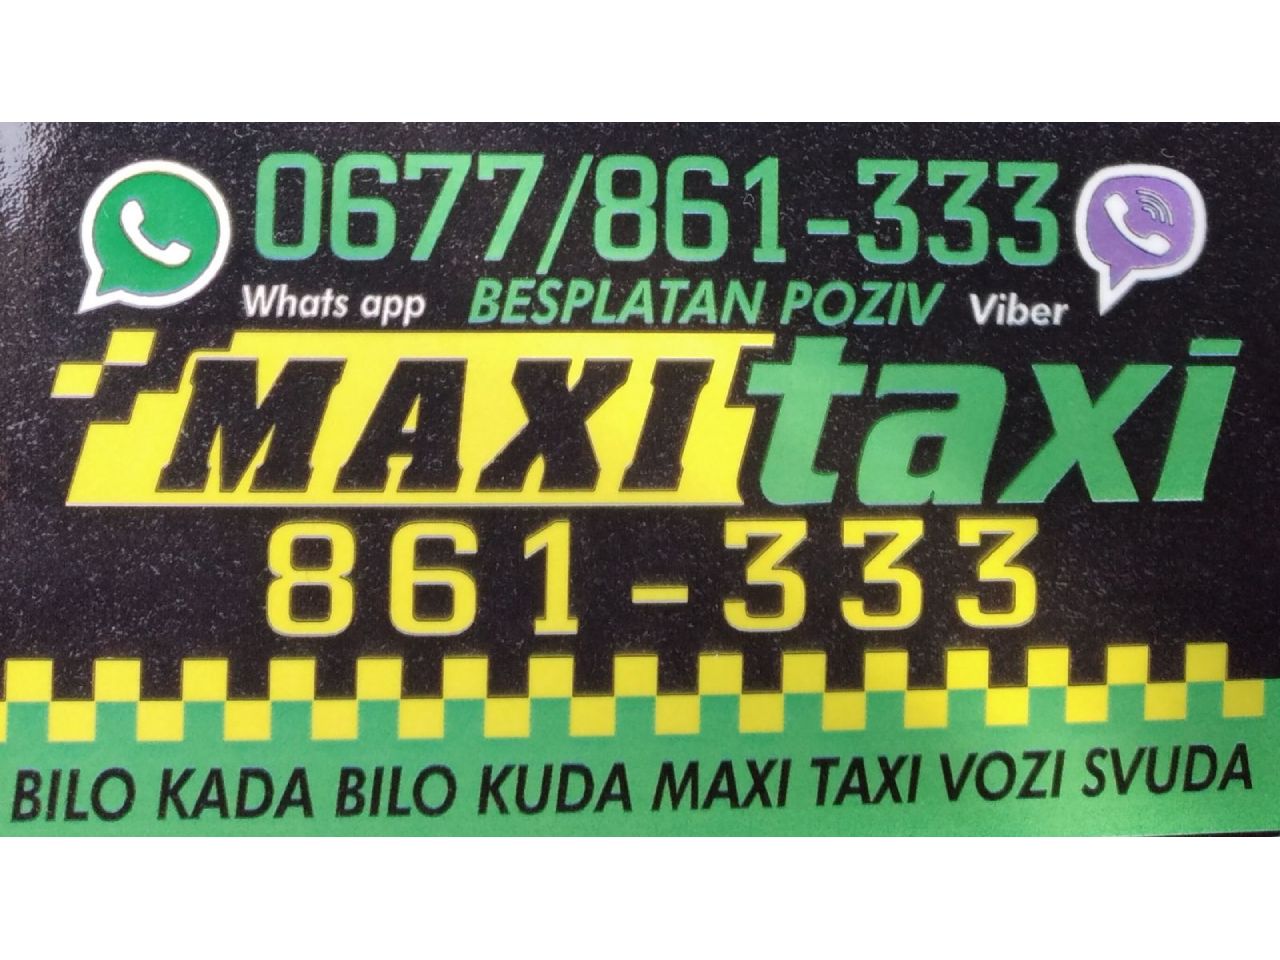 Photo 5 - OUR MAXI TAXI - TAXI services, Bajina Basta